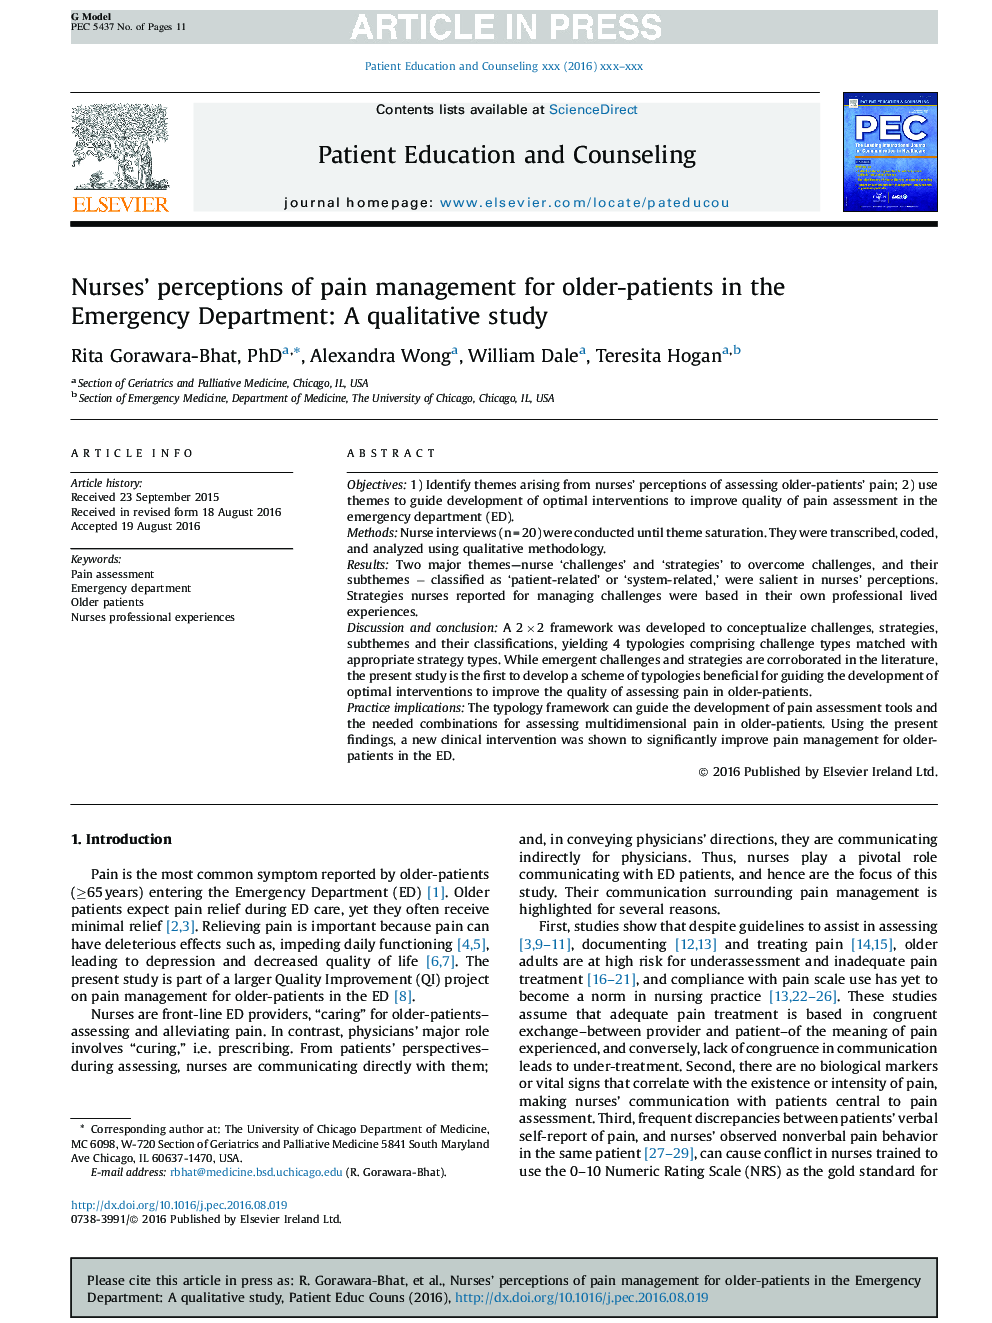 ادراک پرستاران از مدیریت درد در بیماران مسن تر در بخش اورژانس: یک مطالعه کیفی 